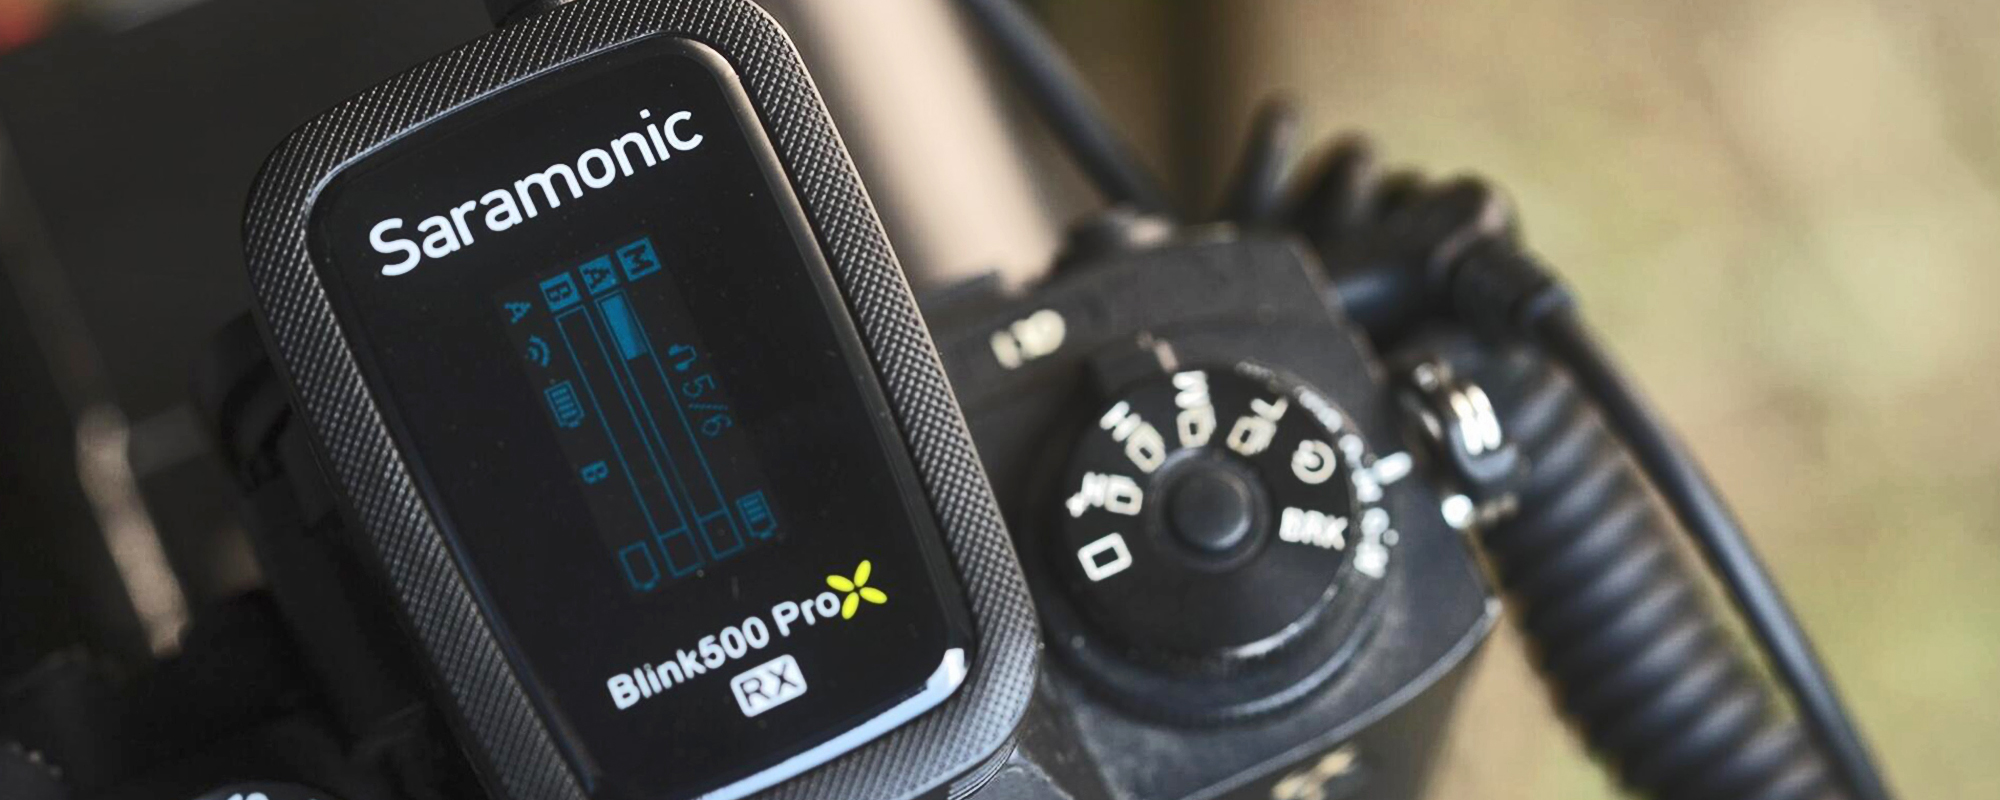 Zestaw do bezprzewodowej transmisji dźwięku Saramonic Blink500 ProX Q2 (RX + TX + TX)